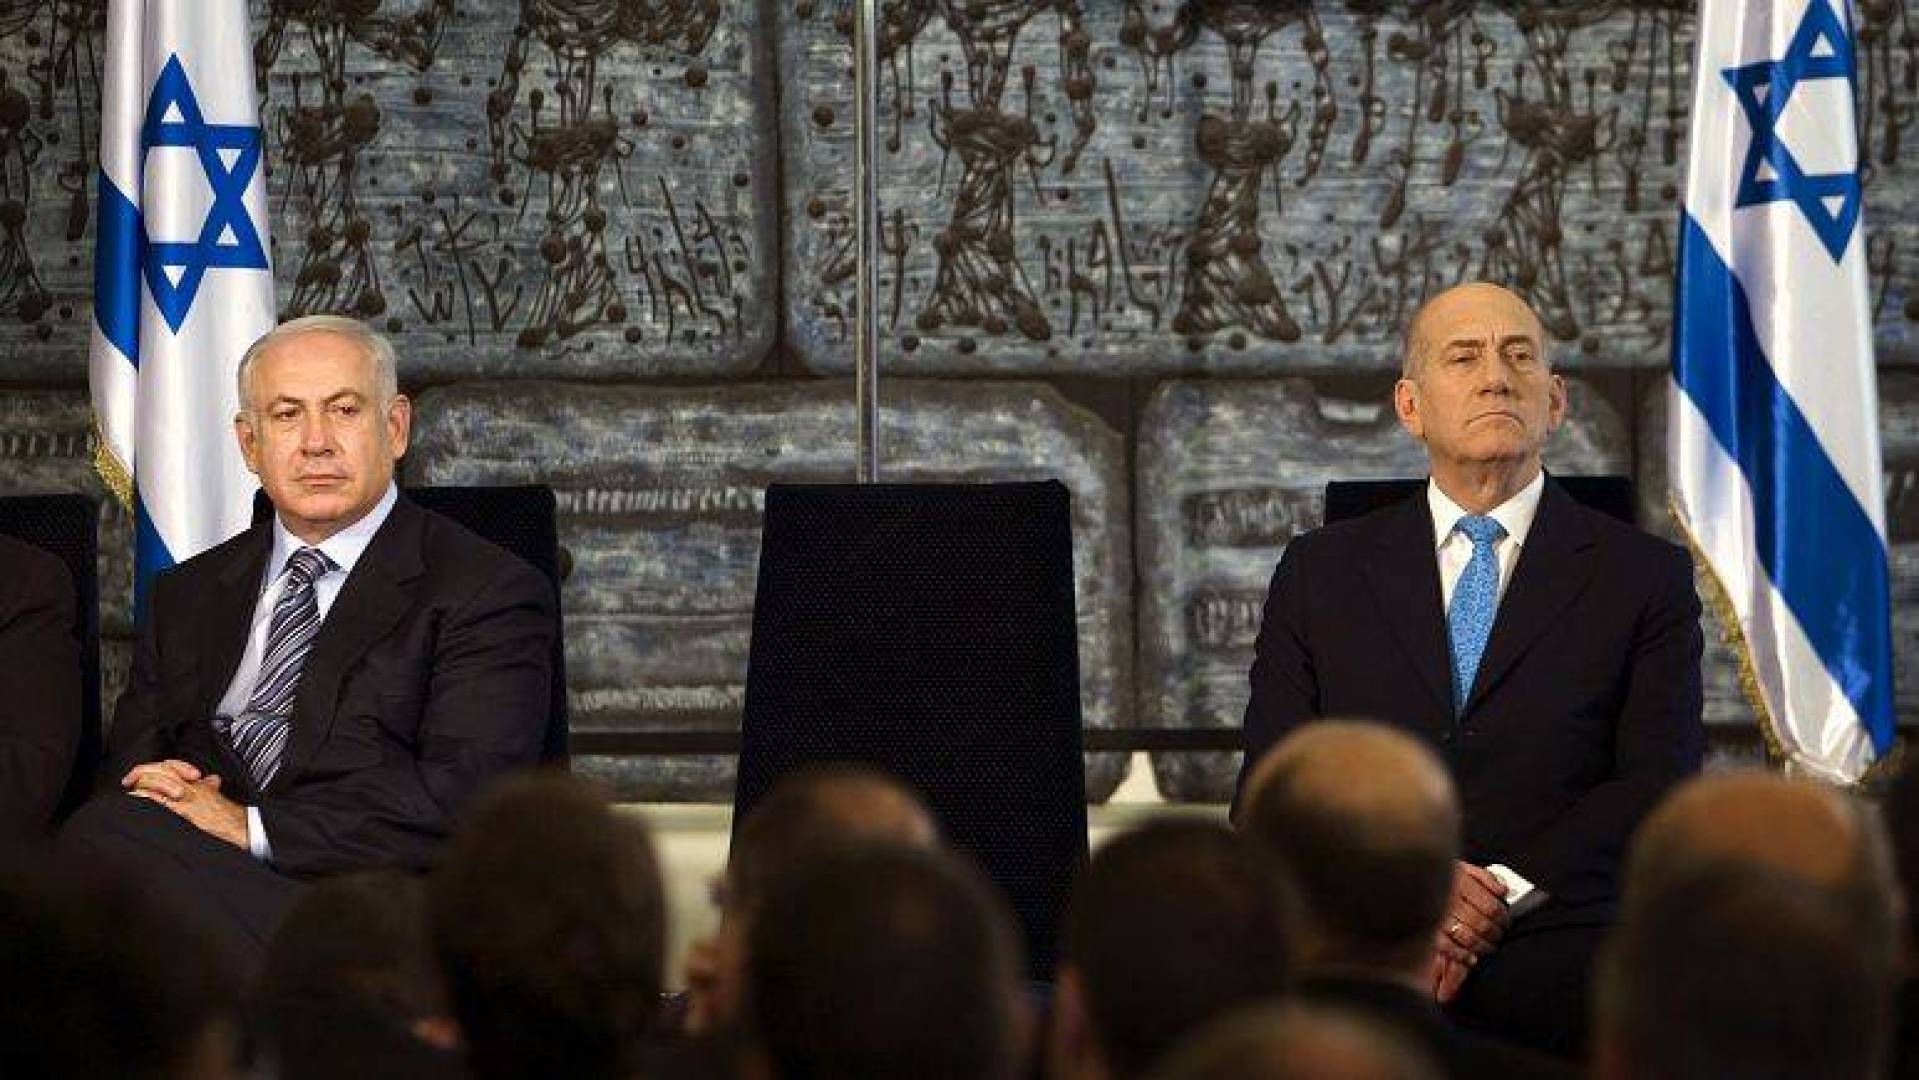 نتنياهو يكسب دعوى تشهير ضد رئيس الوزراء الإسرائيلي السابق أولمرت